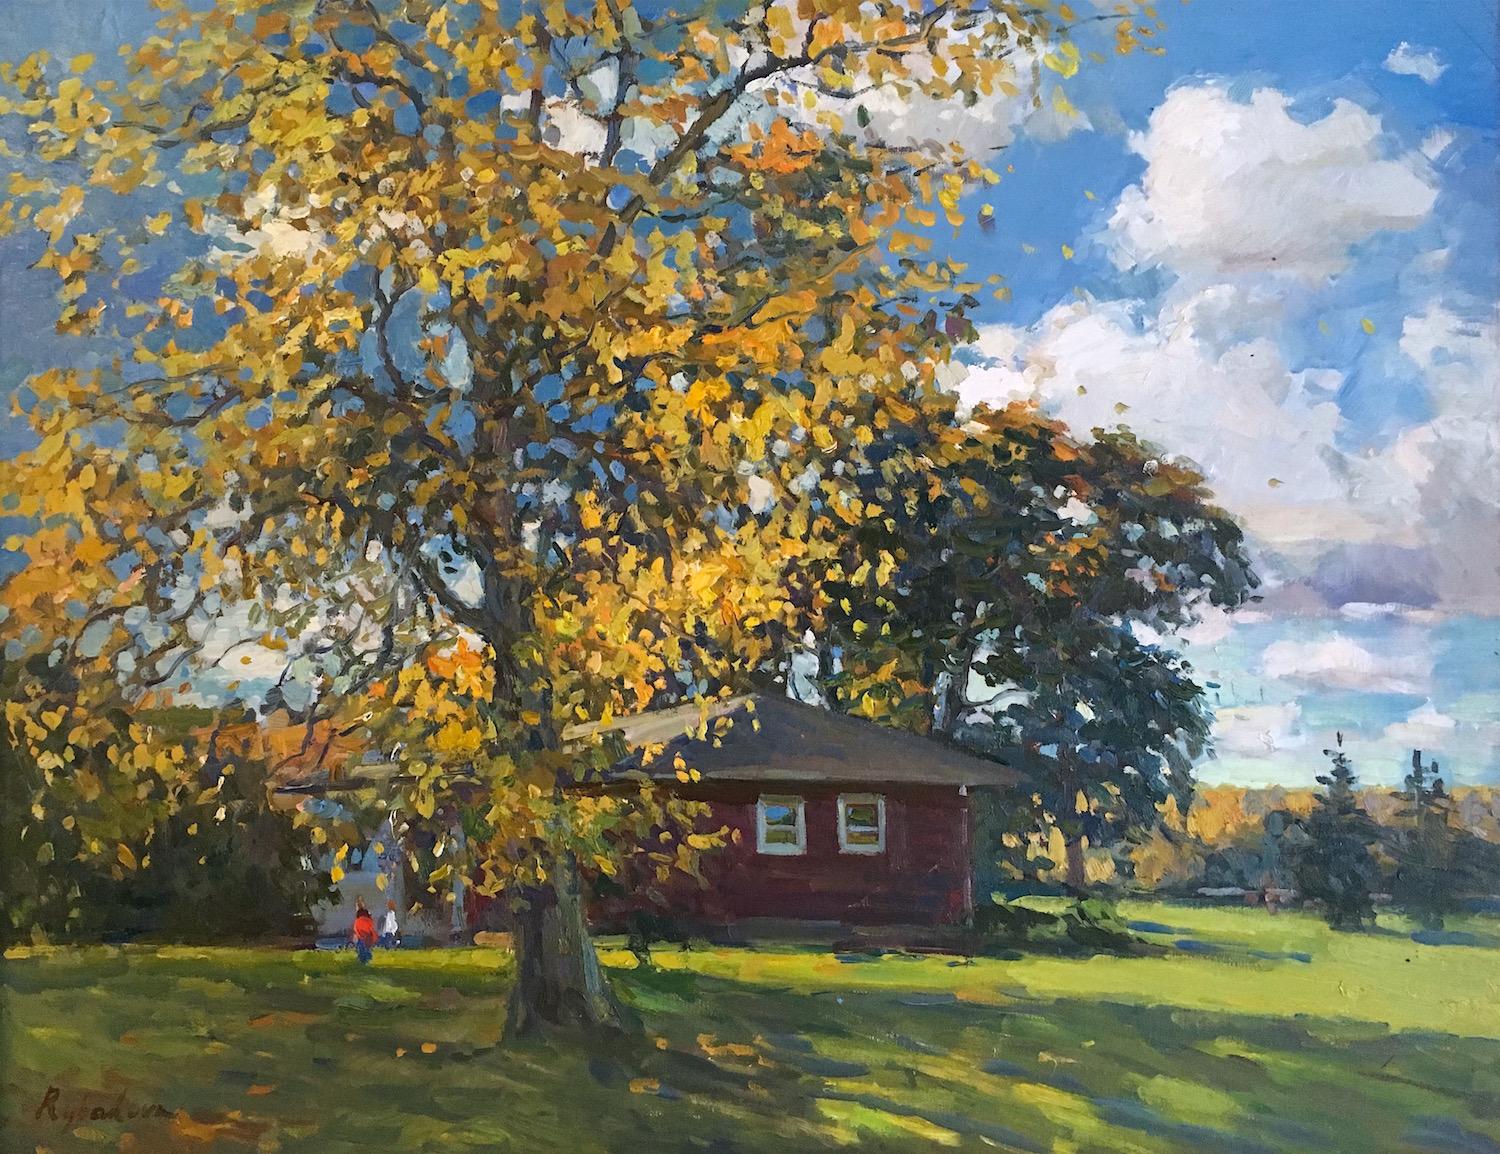 Irina Rybakova Landscape Painting – "Gelber Baum, rote Scheune" Contemporary Impressionist rural landscape en plein air